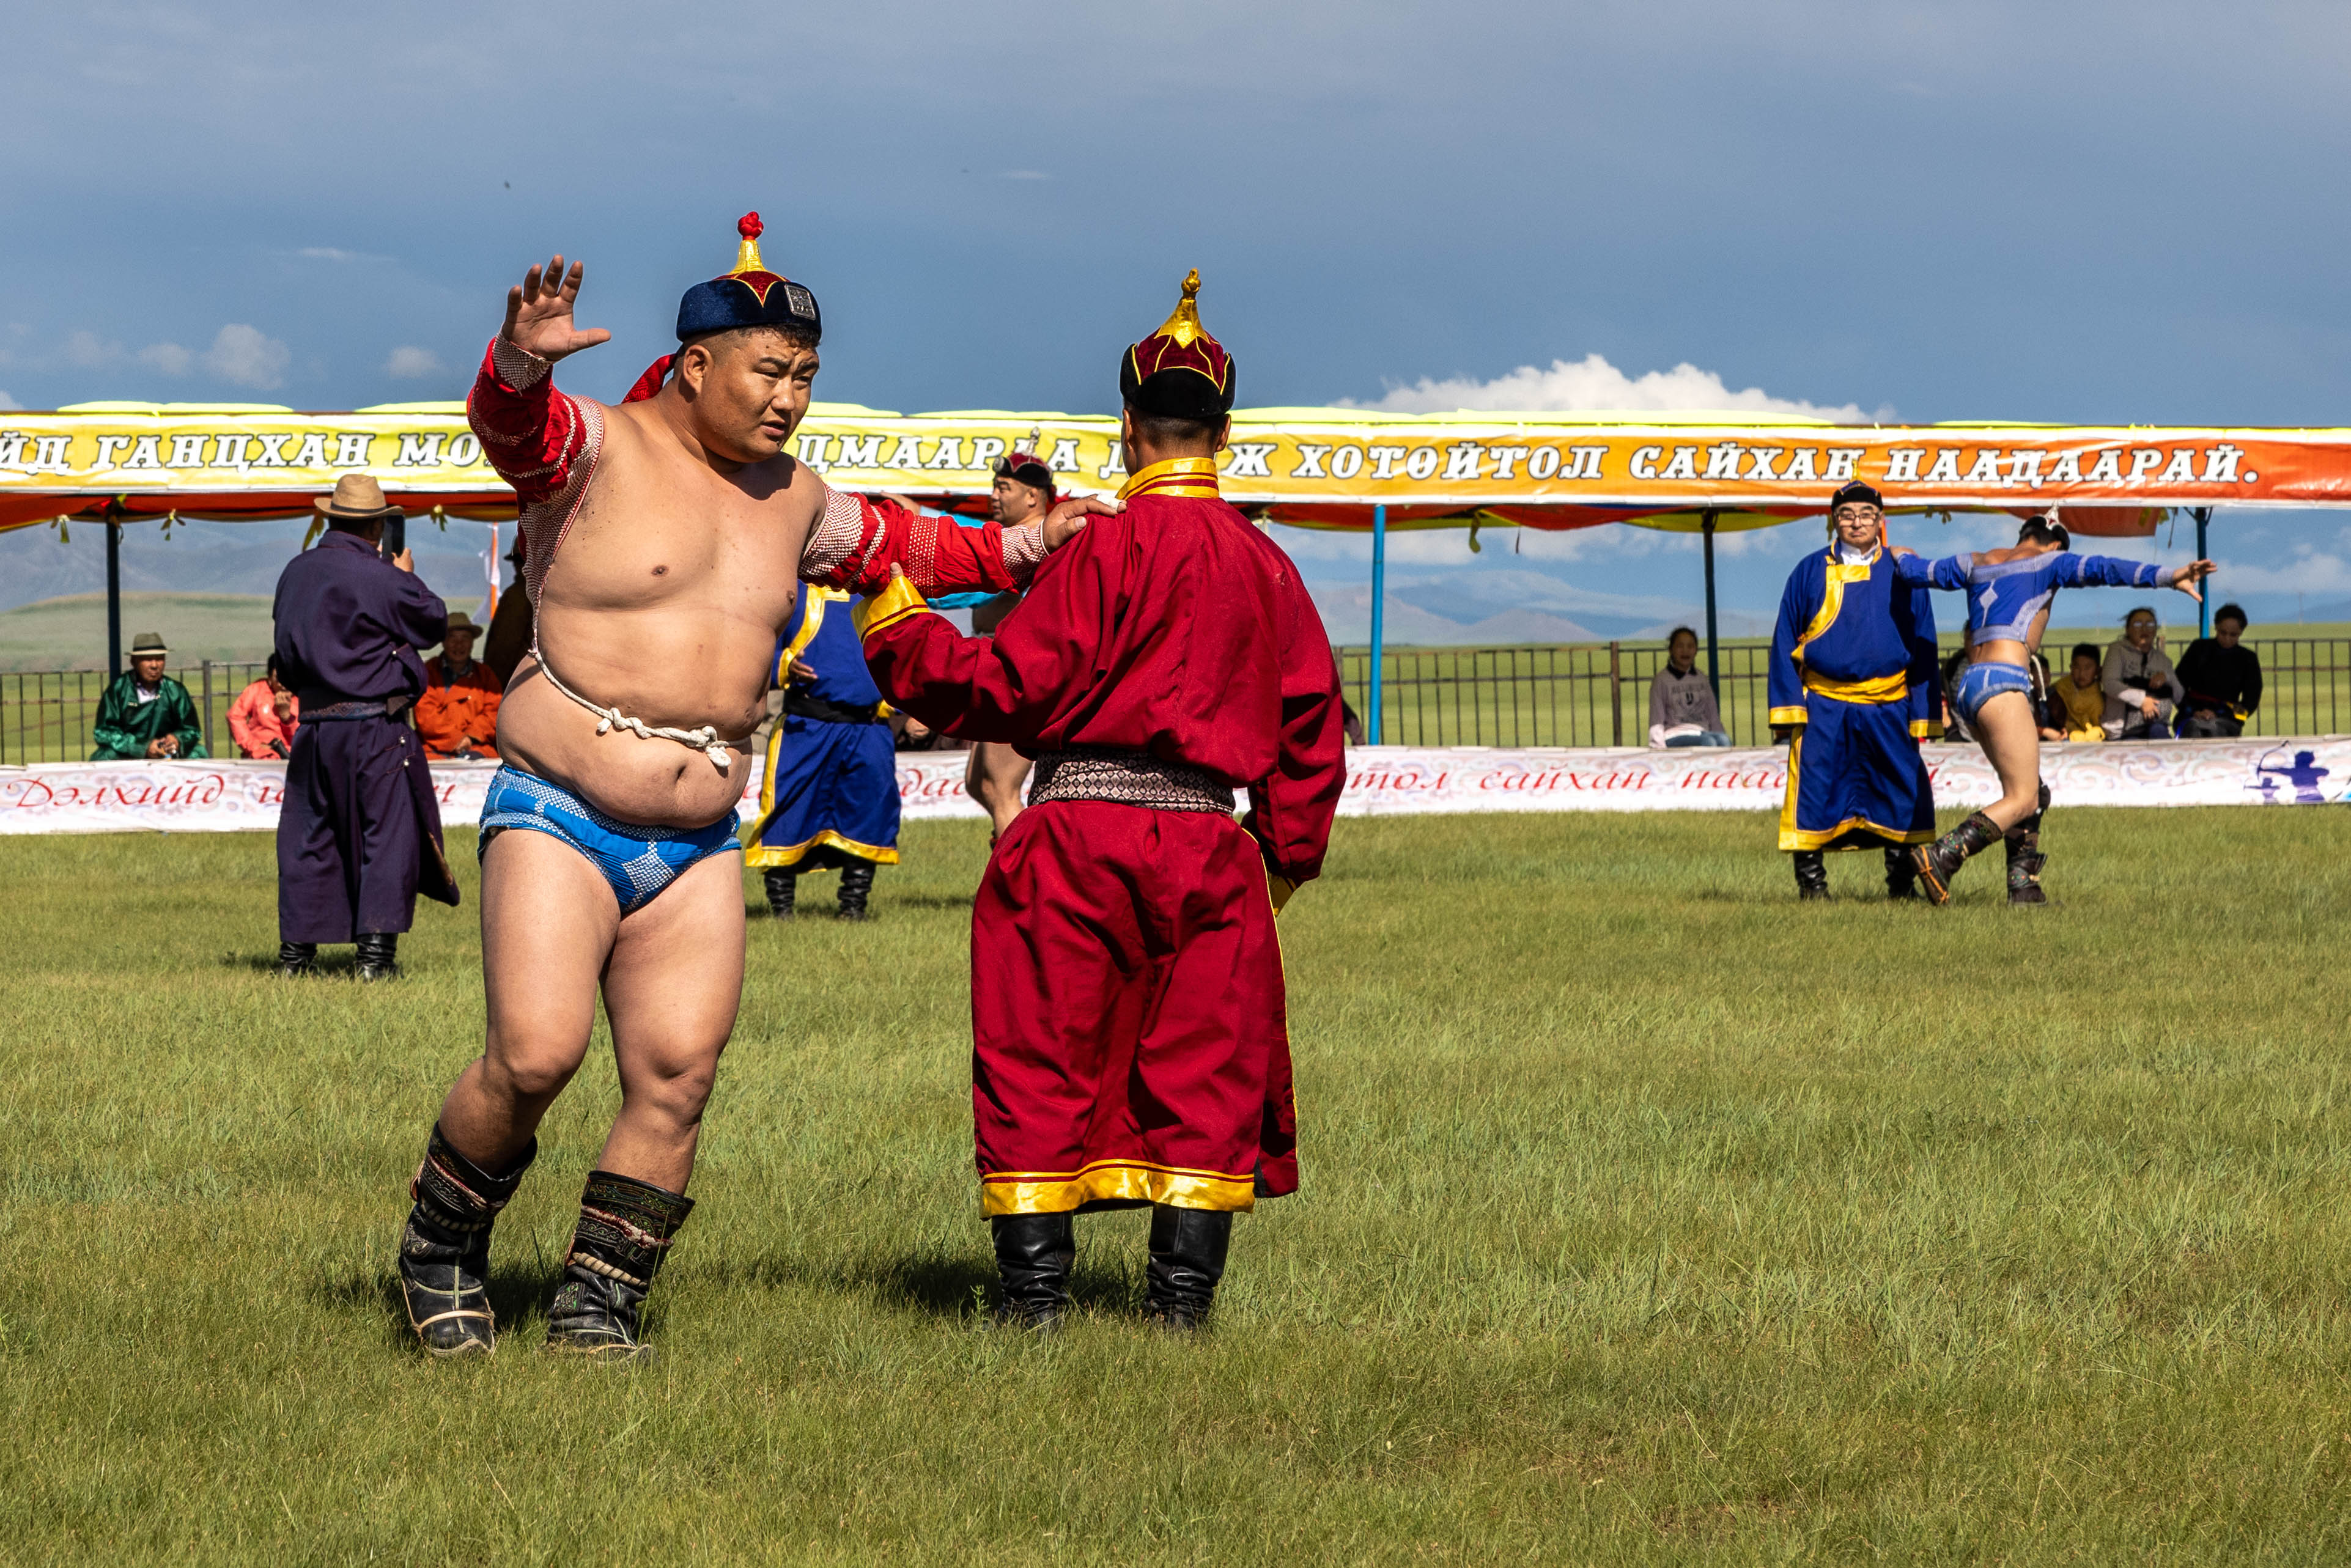 Naadam in Mongolia